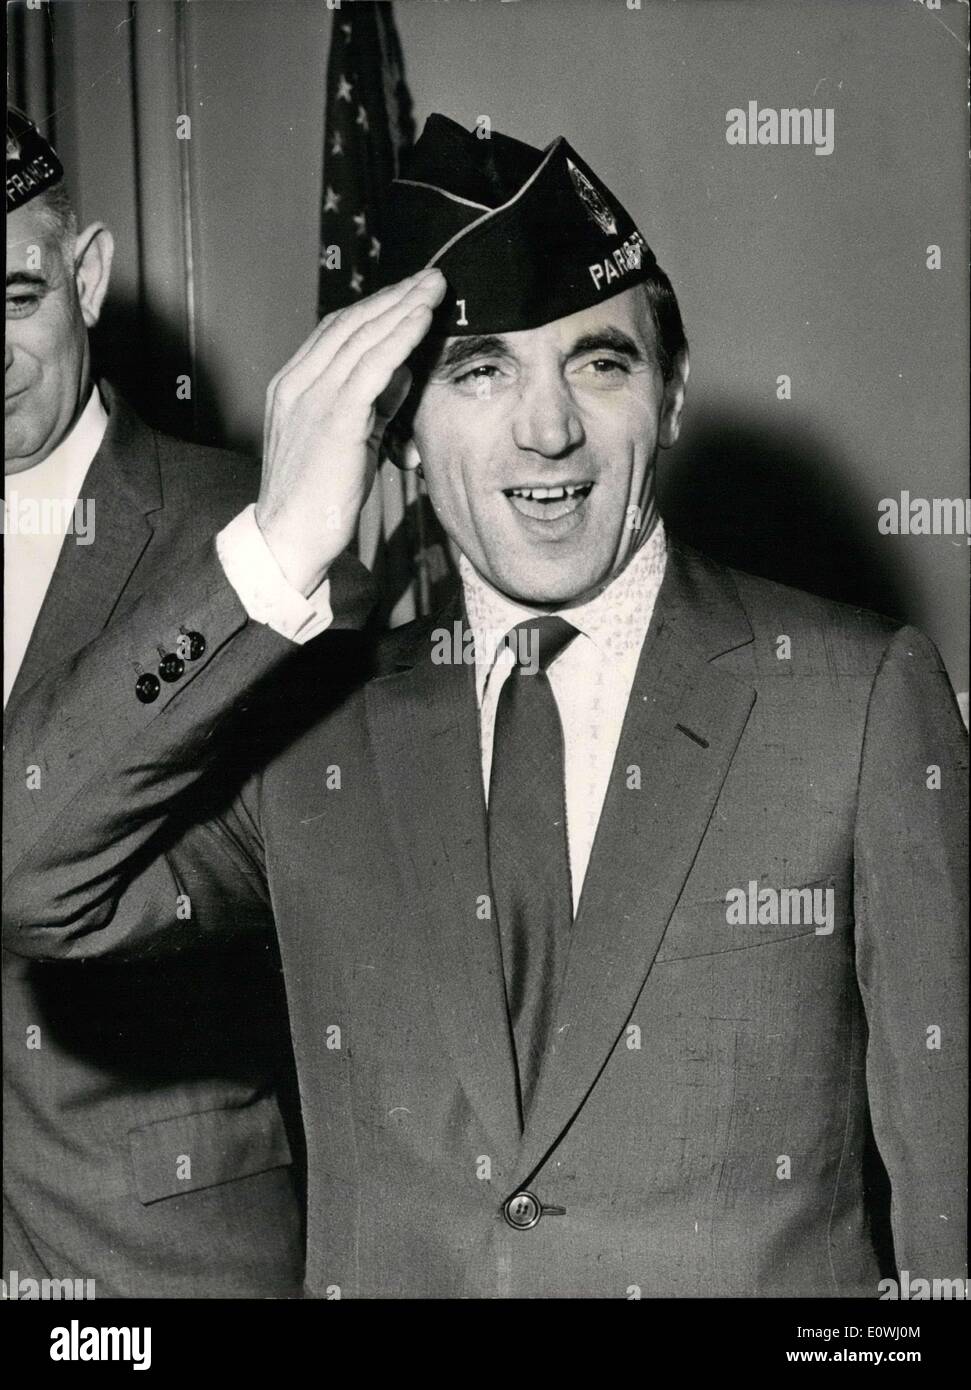 23 février 1963 - le chanteur Charles Aznavour a été nommé membre honoraire de la Légion américaine. Ici, il est indiqué de porter le ''anciens combattants des guerres étrangères'' hat. Banque D'Images